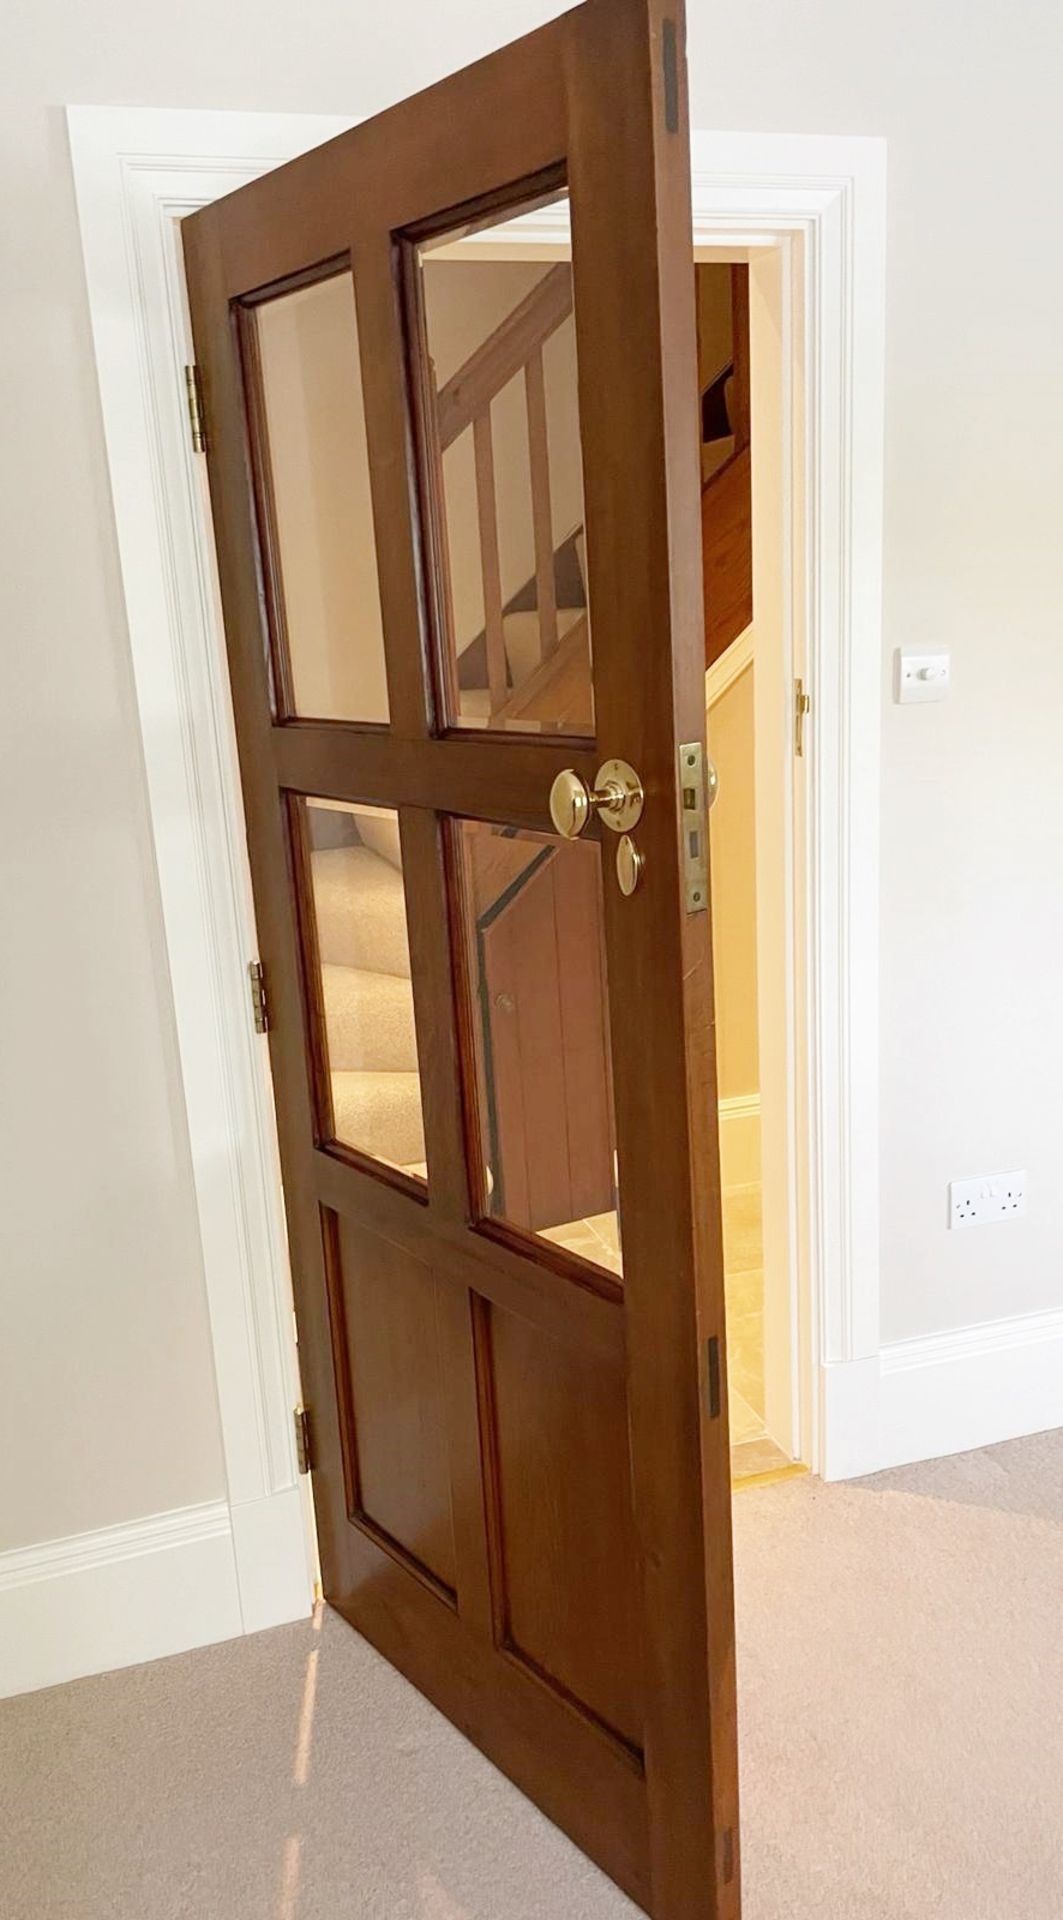 1 x Solid Wood Lockable Internal Door - Includes Handles and Hinges - Ref: PAN130 - NO VAT - Image 3 of 8